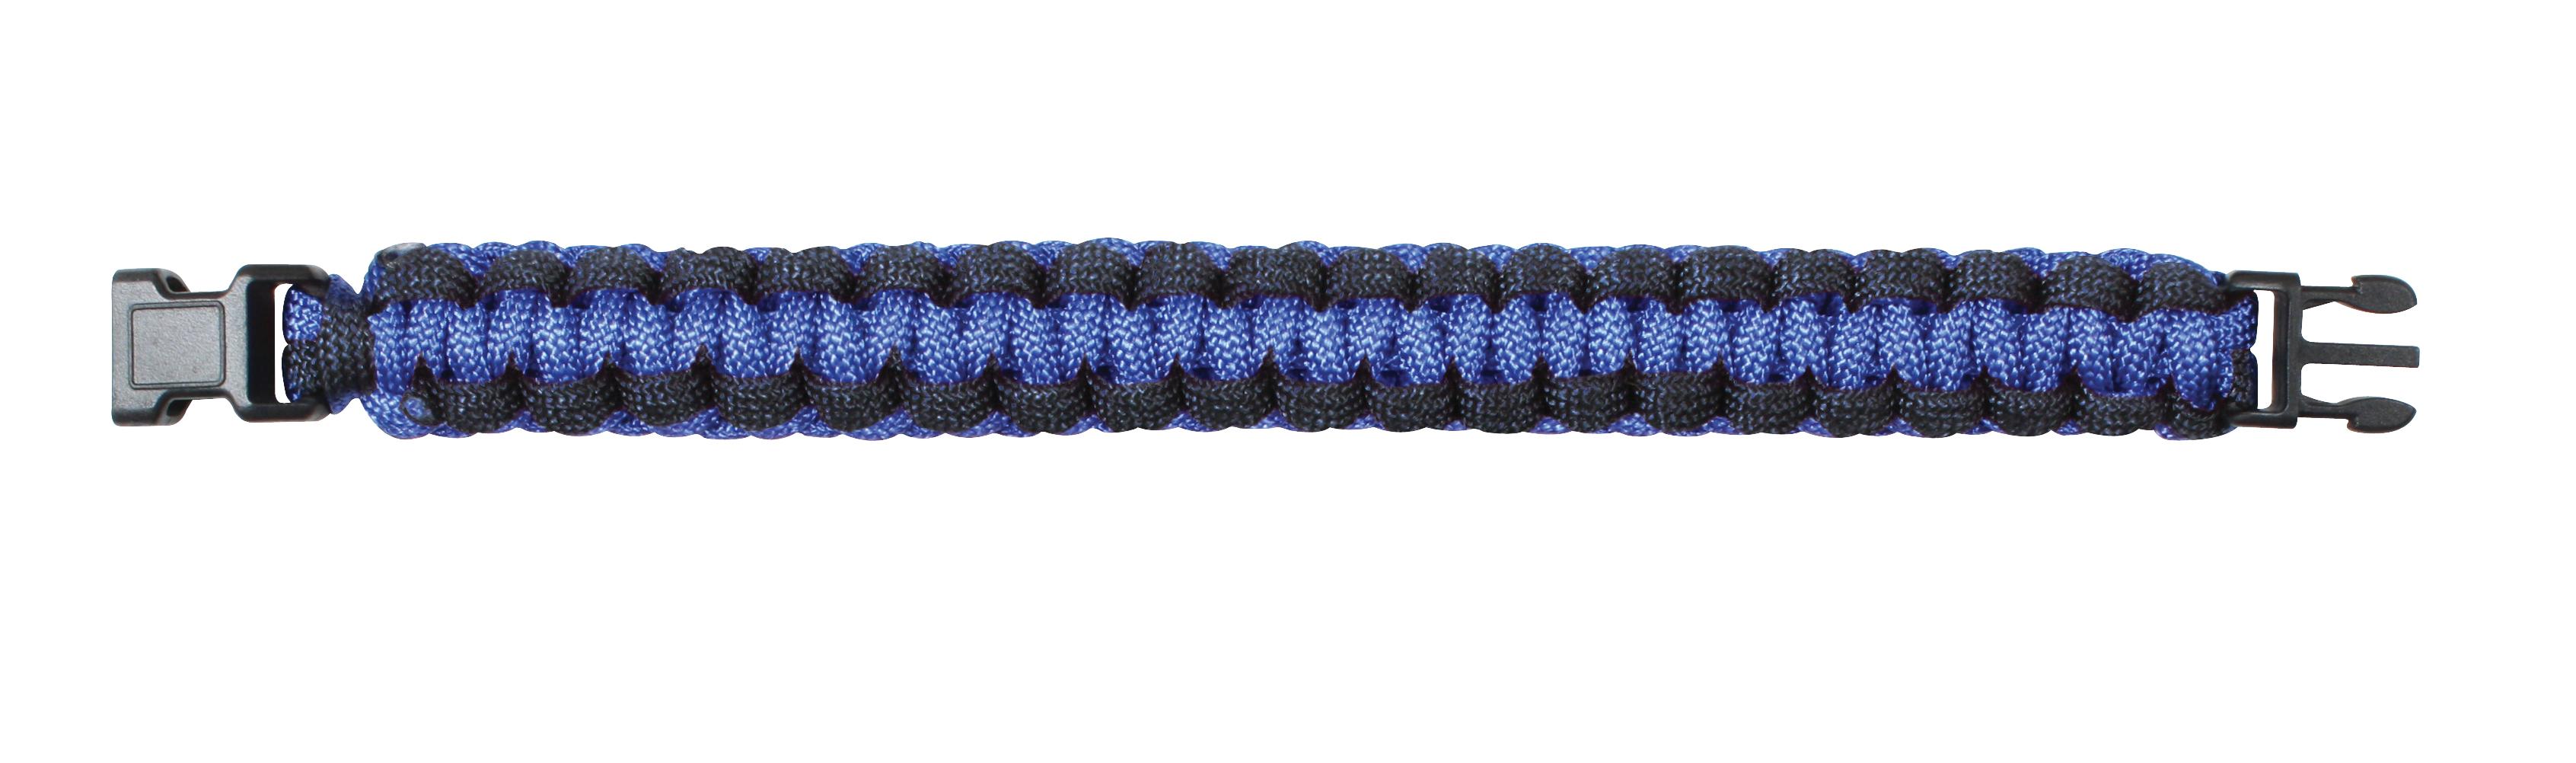 Thin blue line paracord bracelet - Ropes & paracords